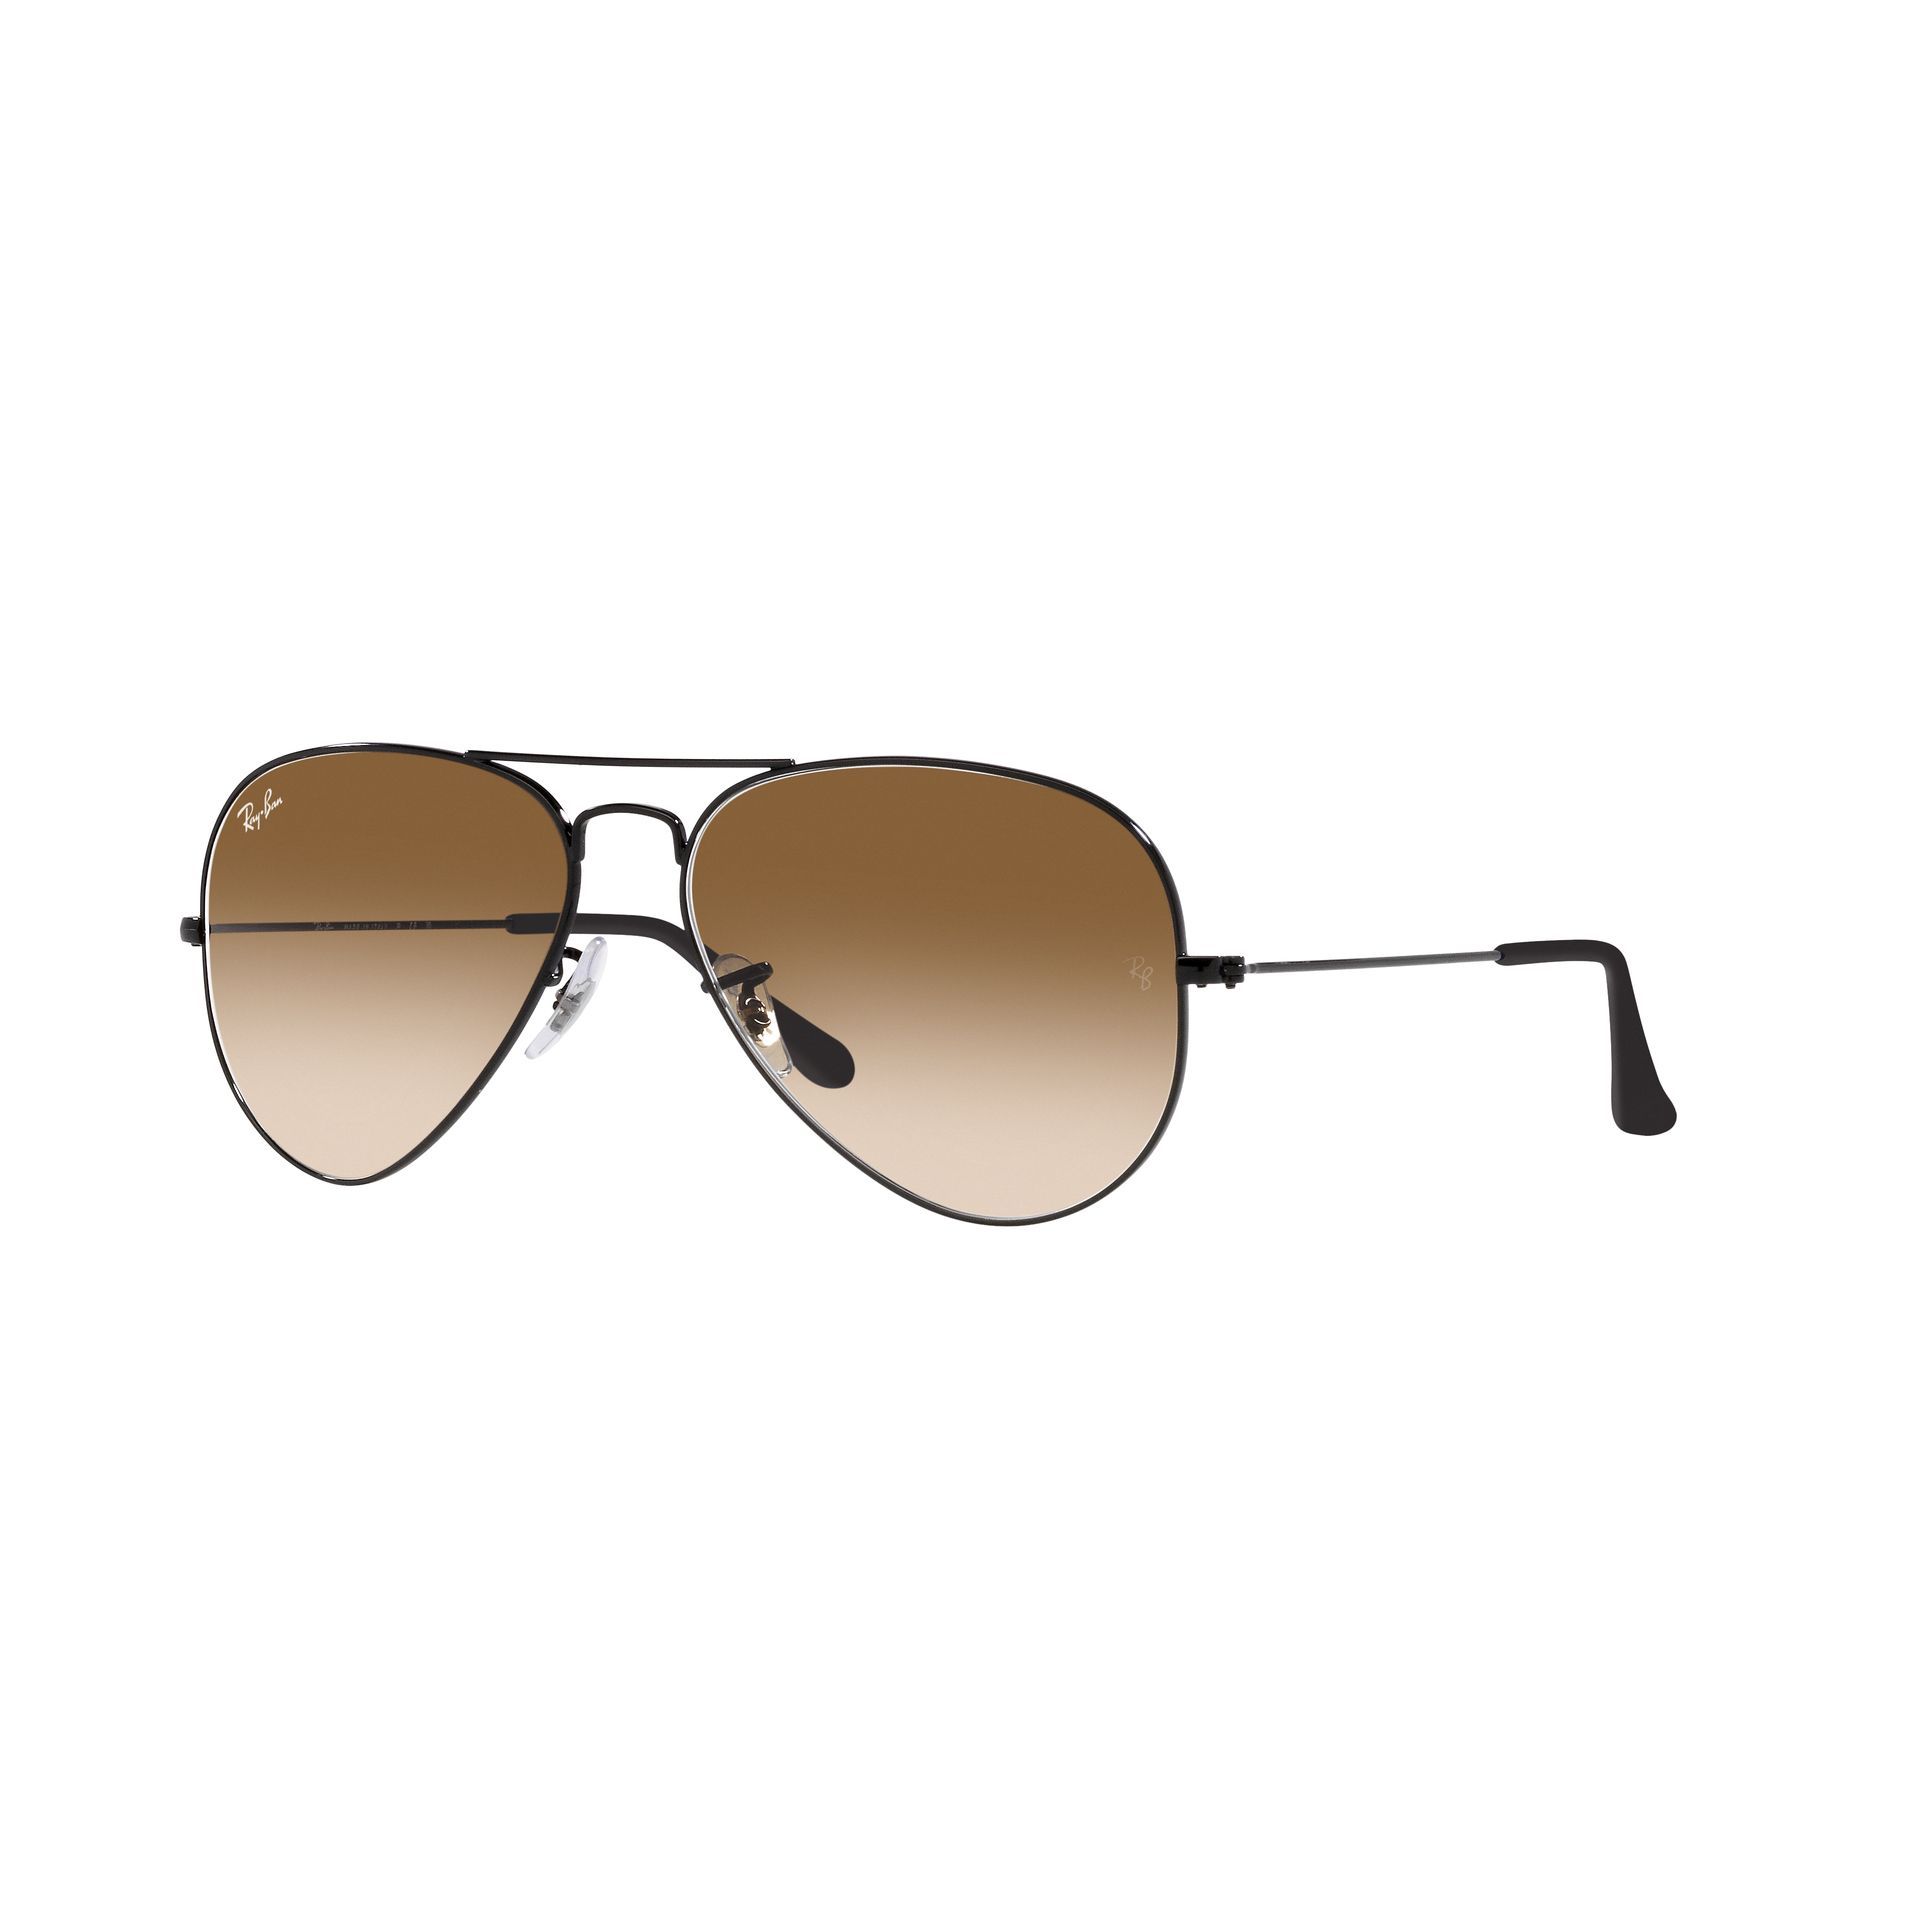 0RB3025 Aviator Sunglasses 002 51 - size 55